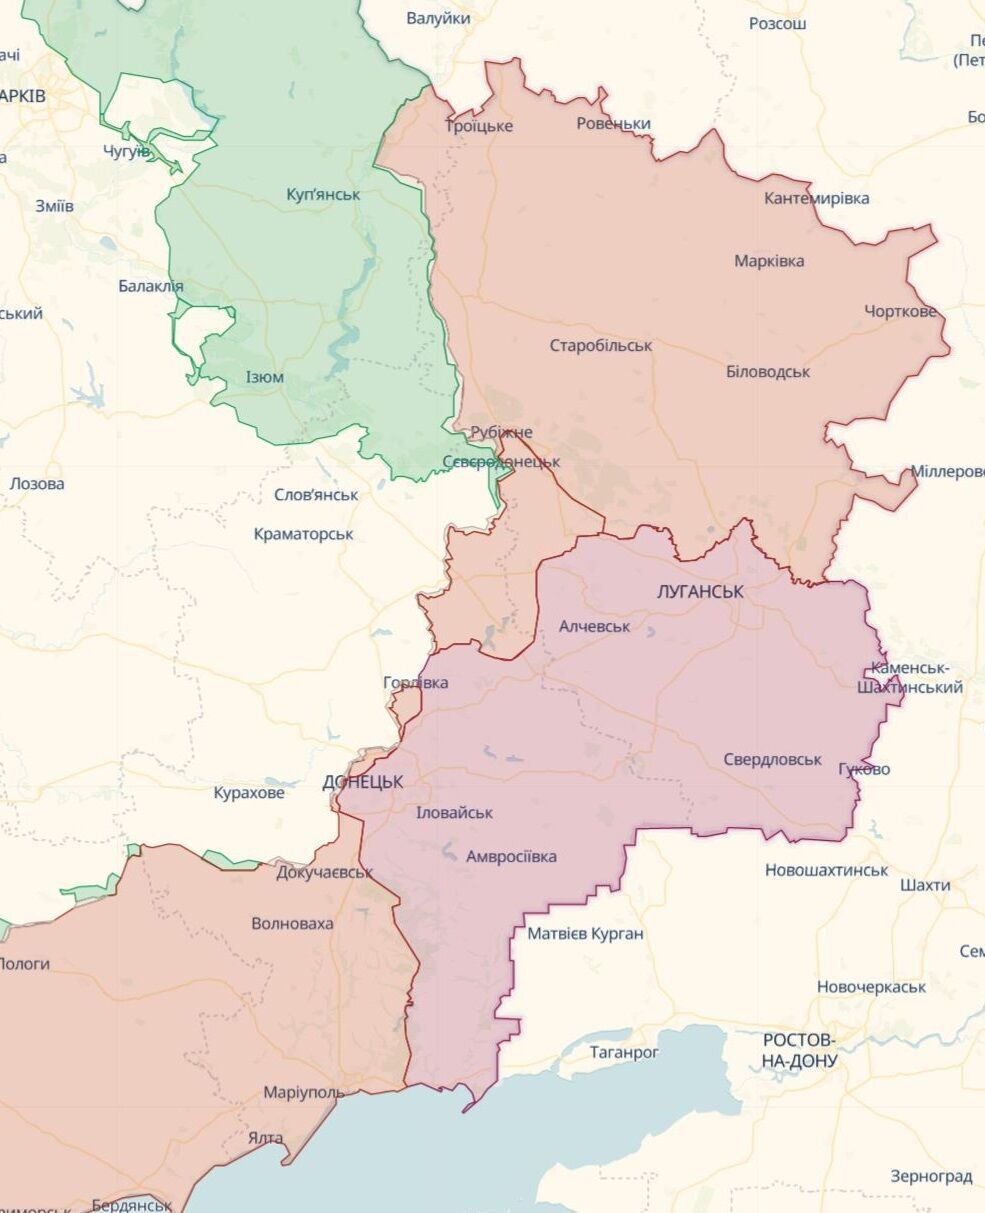 Путин отдал приказ своим войскам полностью захватить Донецкую и Луганскую области и установил дедлайн – разведка